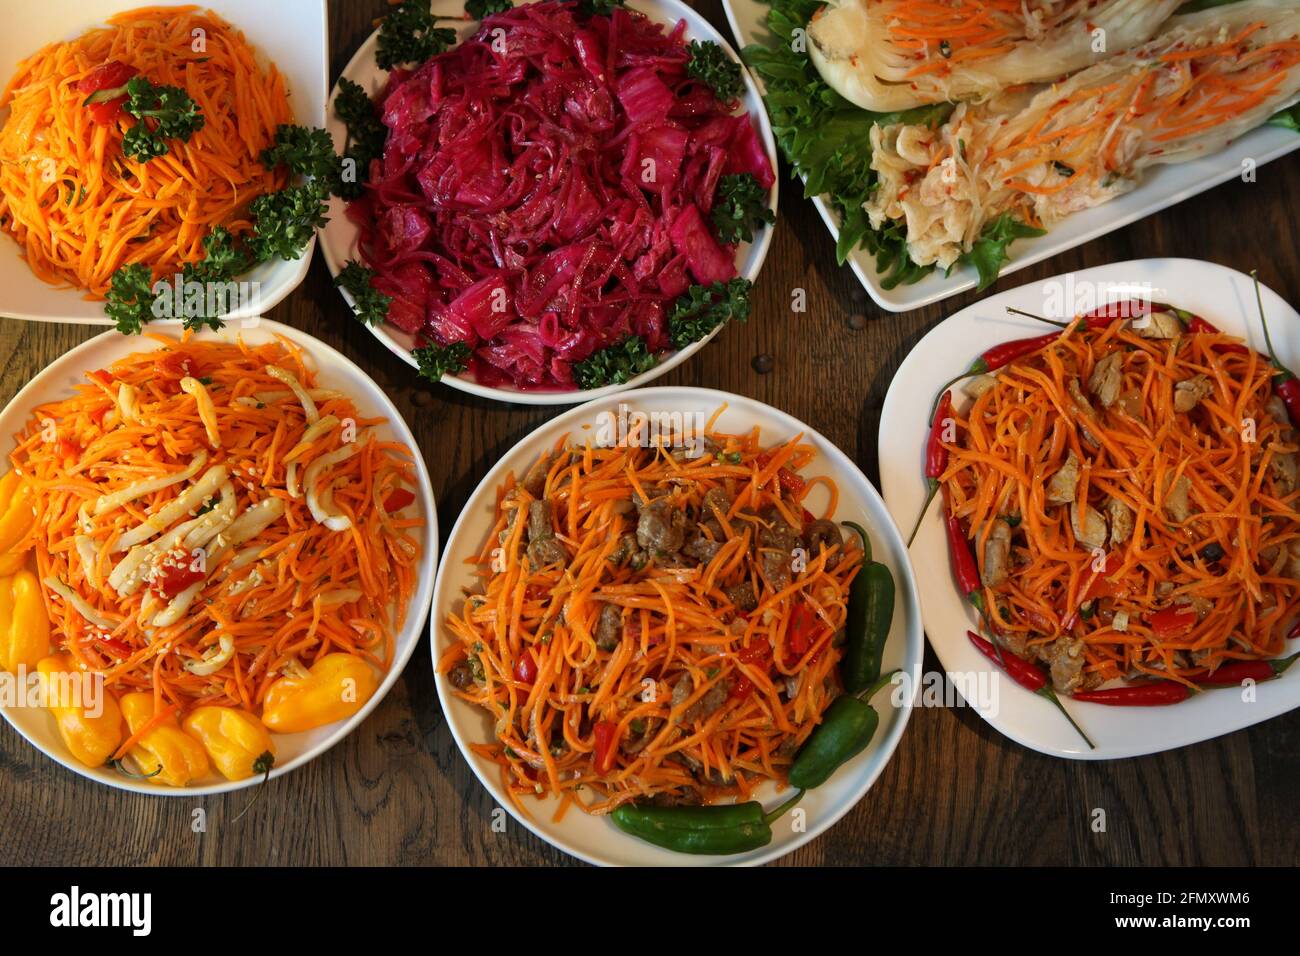 Sul tavolo c'era un sacco di insalate coreane e deliziosi piatti biologici vegetali Foto Stock